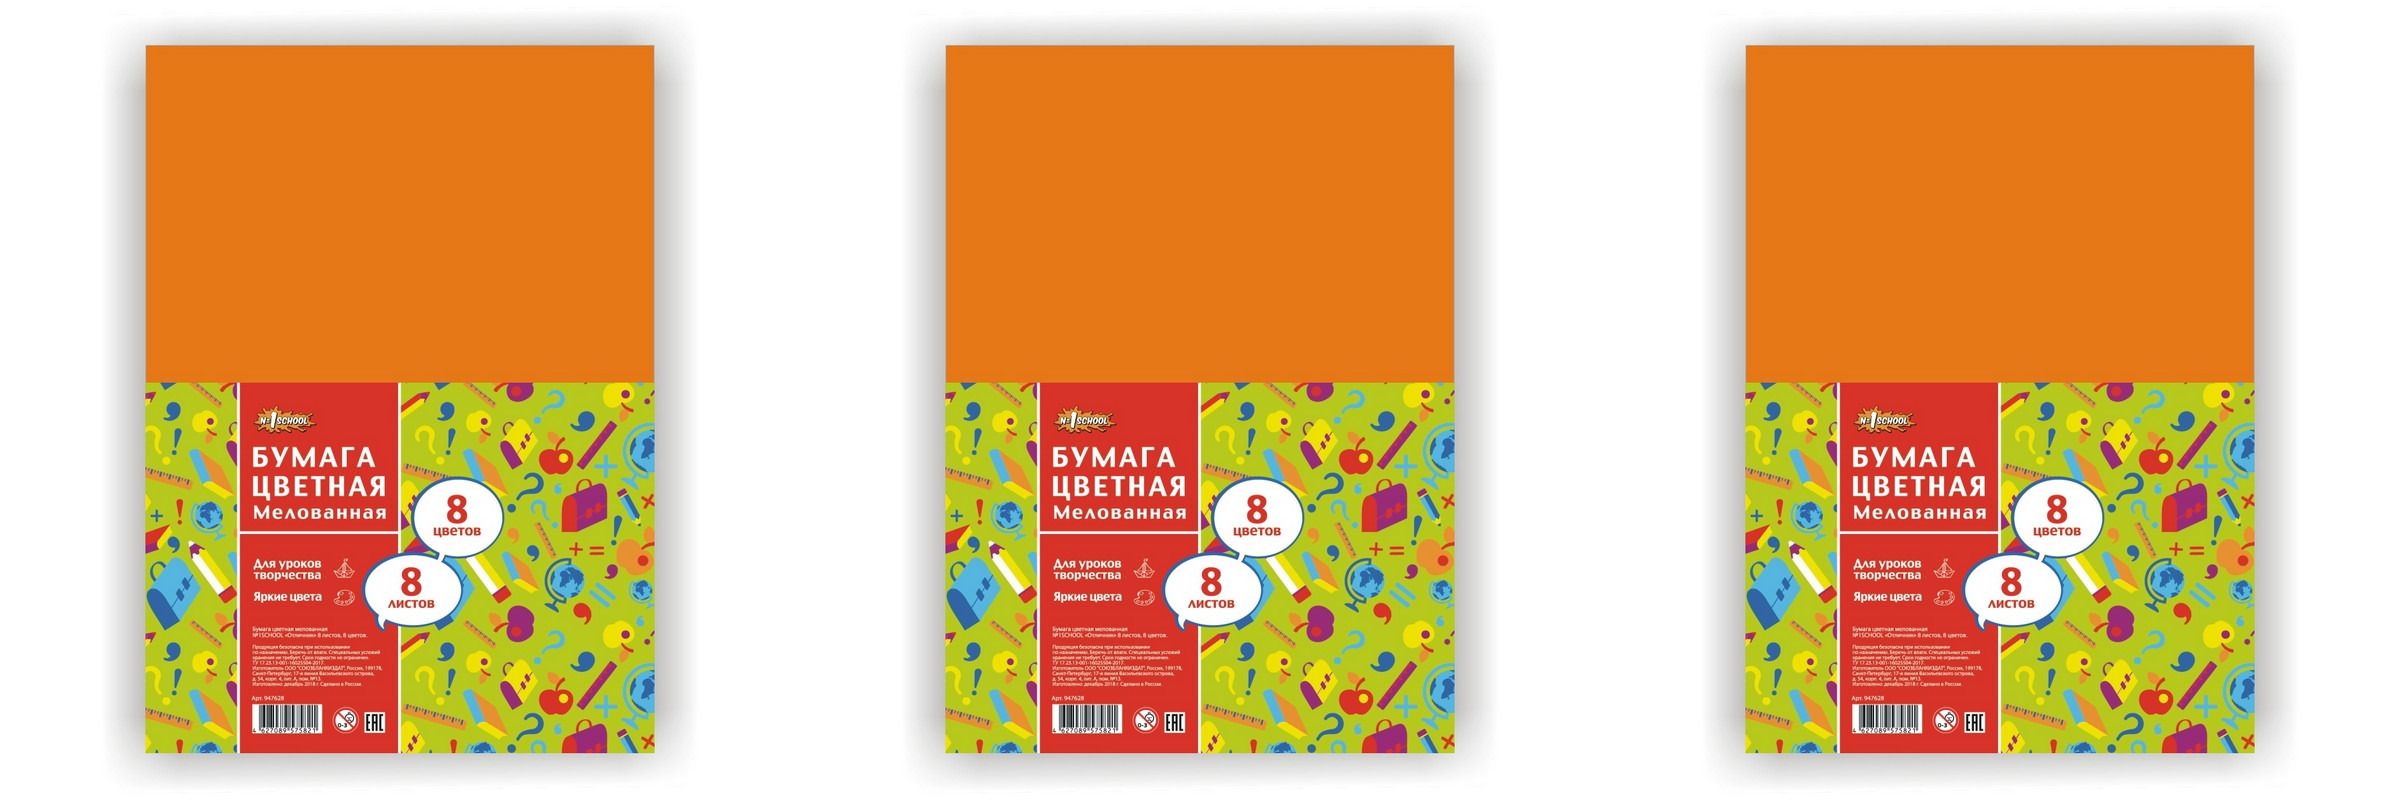 Бумажка для школы. Цветная бумага а4 2-сторонняя мелованная, 8 листов 8 цветов скоба Hatber.